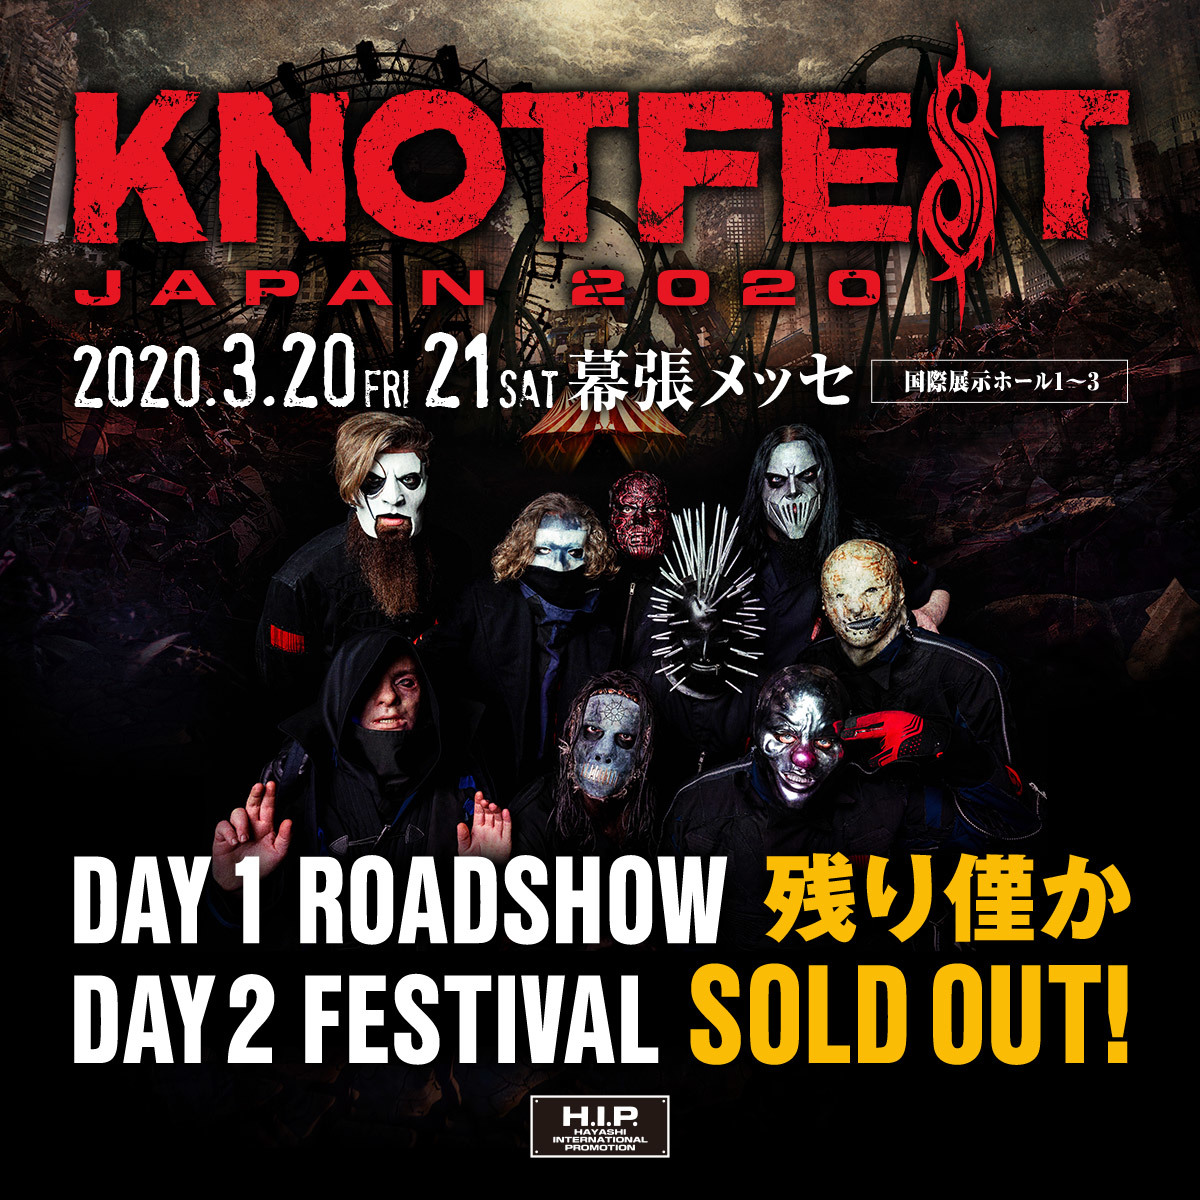 KNOTFEST JAPAN 2020』DAY2“FESTIVAL”のチケットがソールドアウト | SPICE - エンタメ特化型情報メディア スパイス